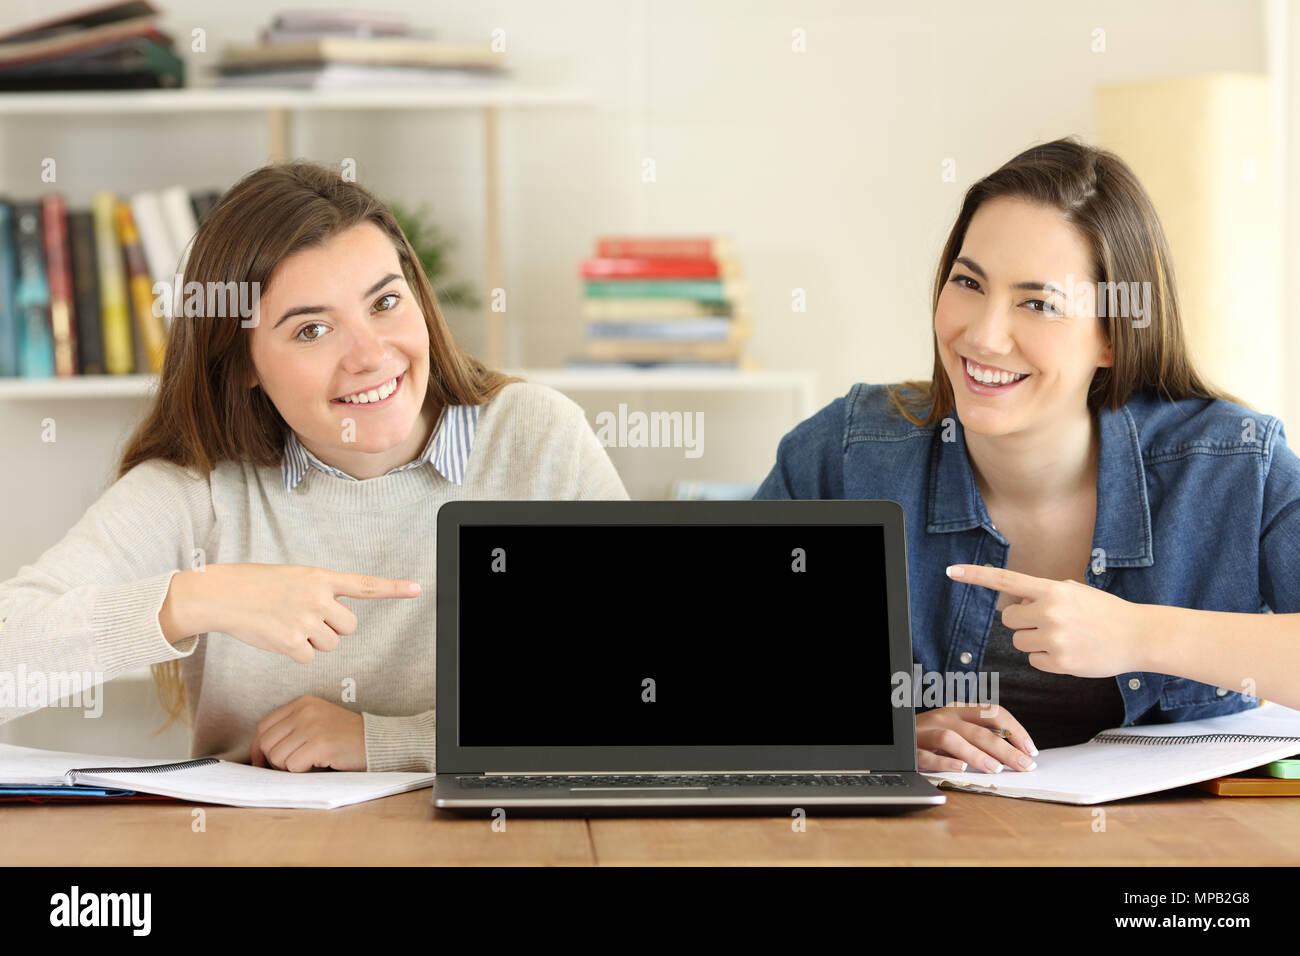 Vorderansicht Portrait von zwei Studenten an einem Laptop Bildschirm Mockup zu Hause zeigen Stockfoto